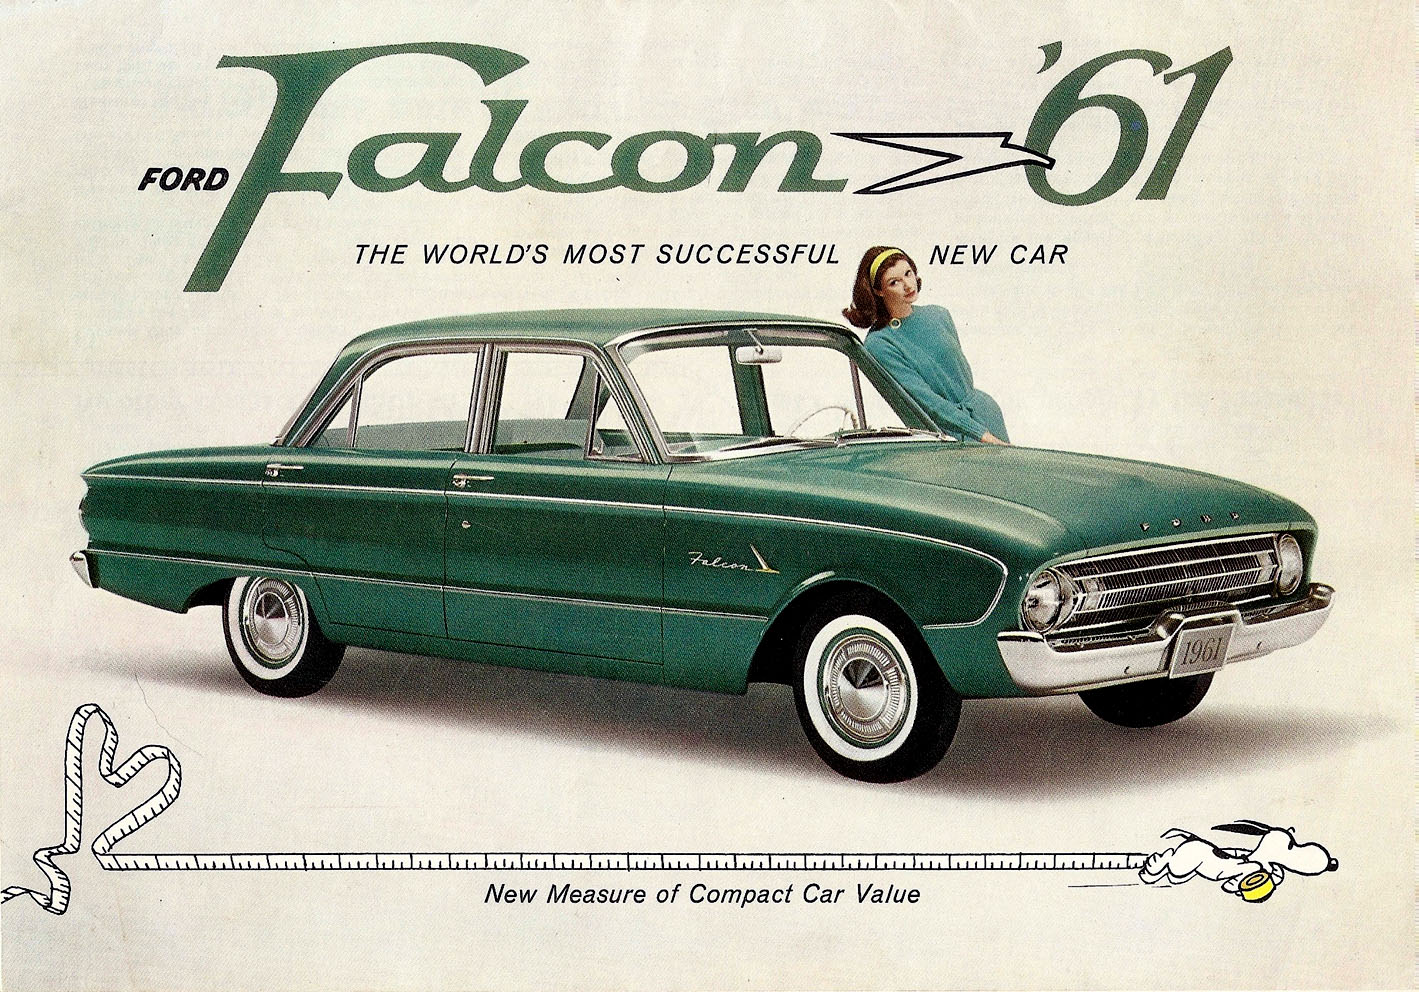 n_1961 Ford Falcon-01.jpg